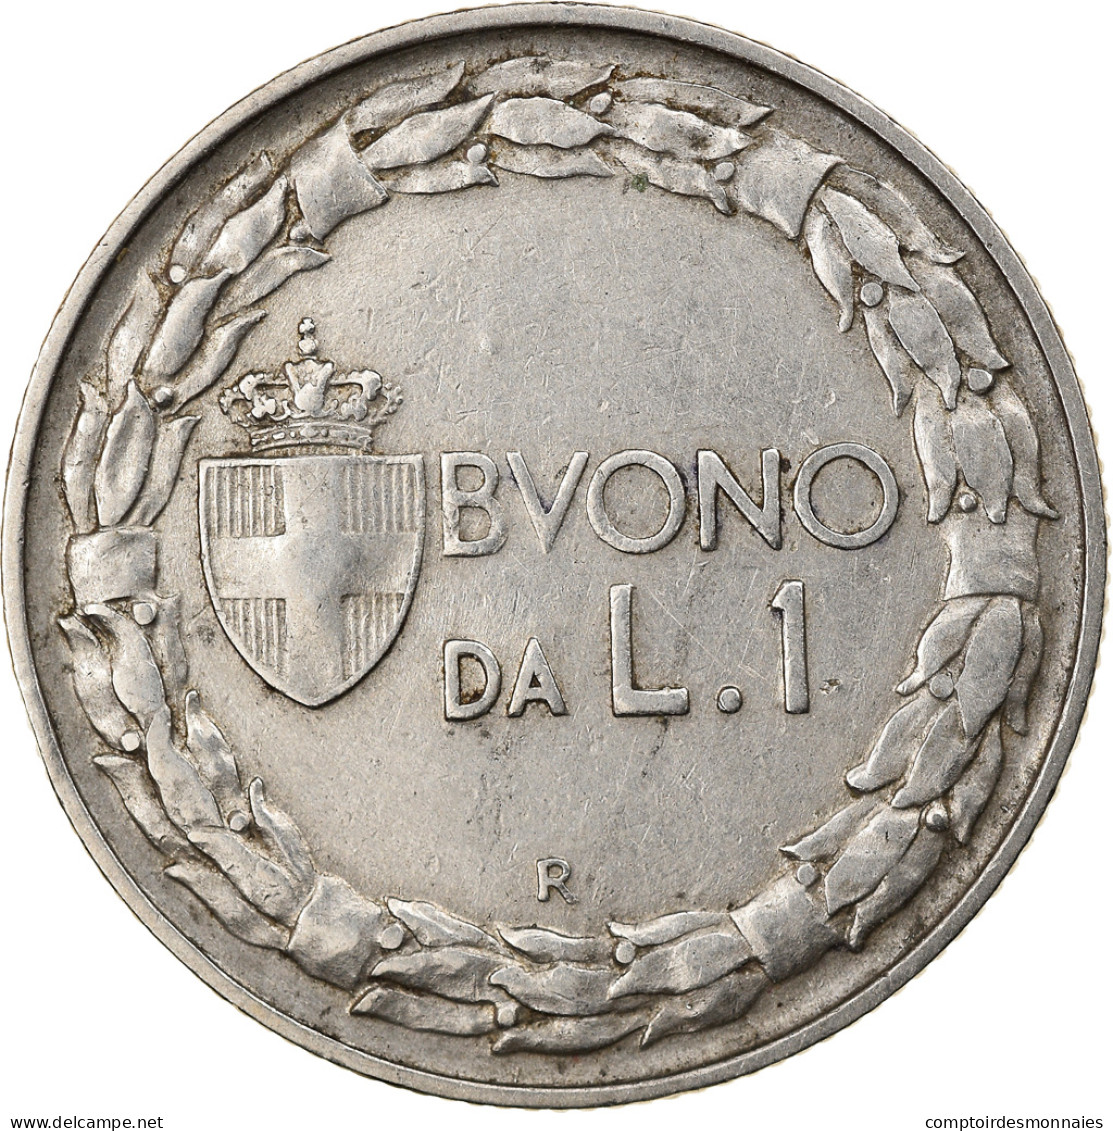 Monnaie, Italie, Vittorio Emanuele III, Lira, 1922, Rome, TB+, Nickel, KM:62 - 1900-1946 : Victor Emmanuel III & Umberto II